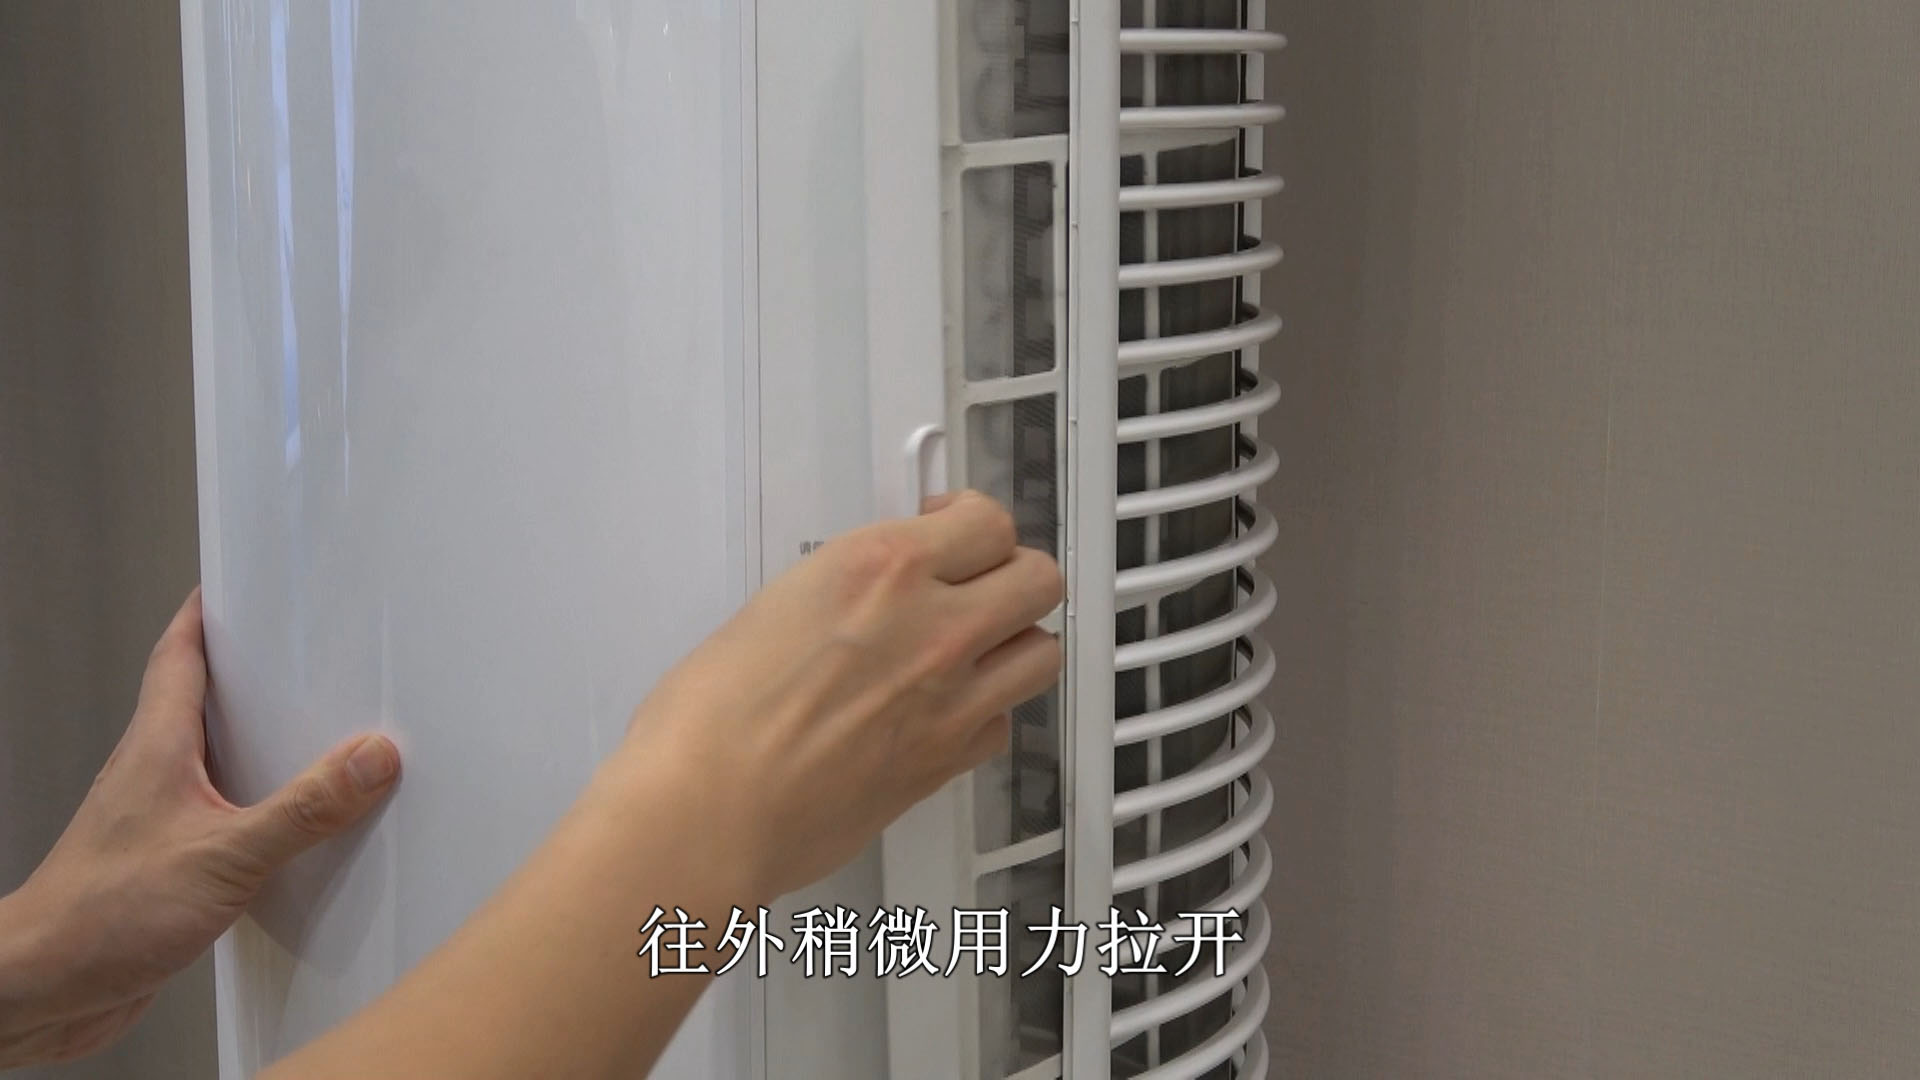 空调怎么清洗 空调清洗方法 | 说明书网